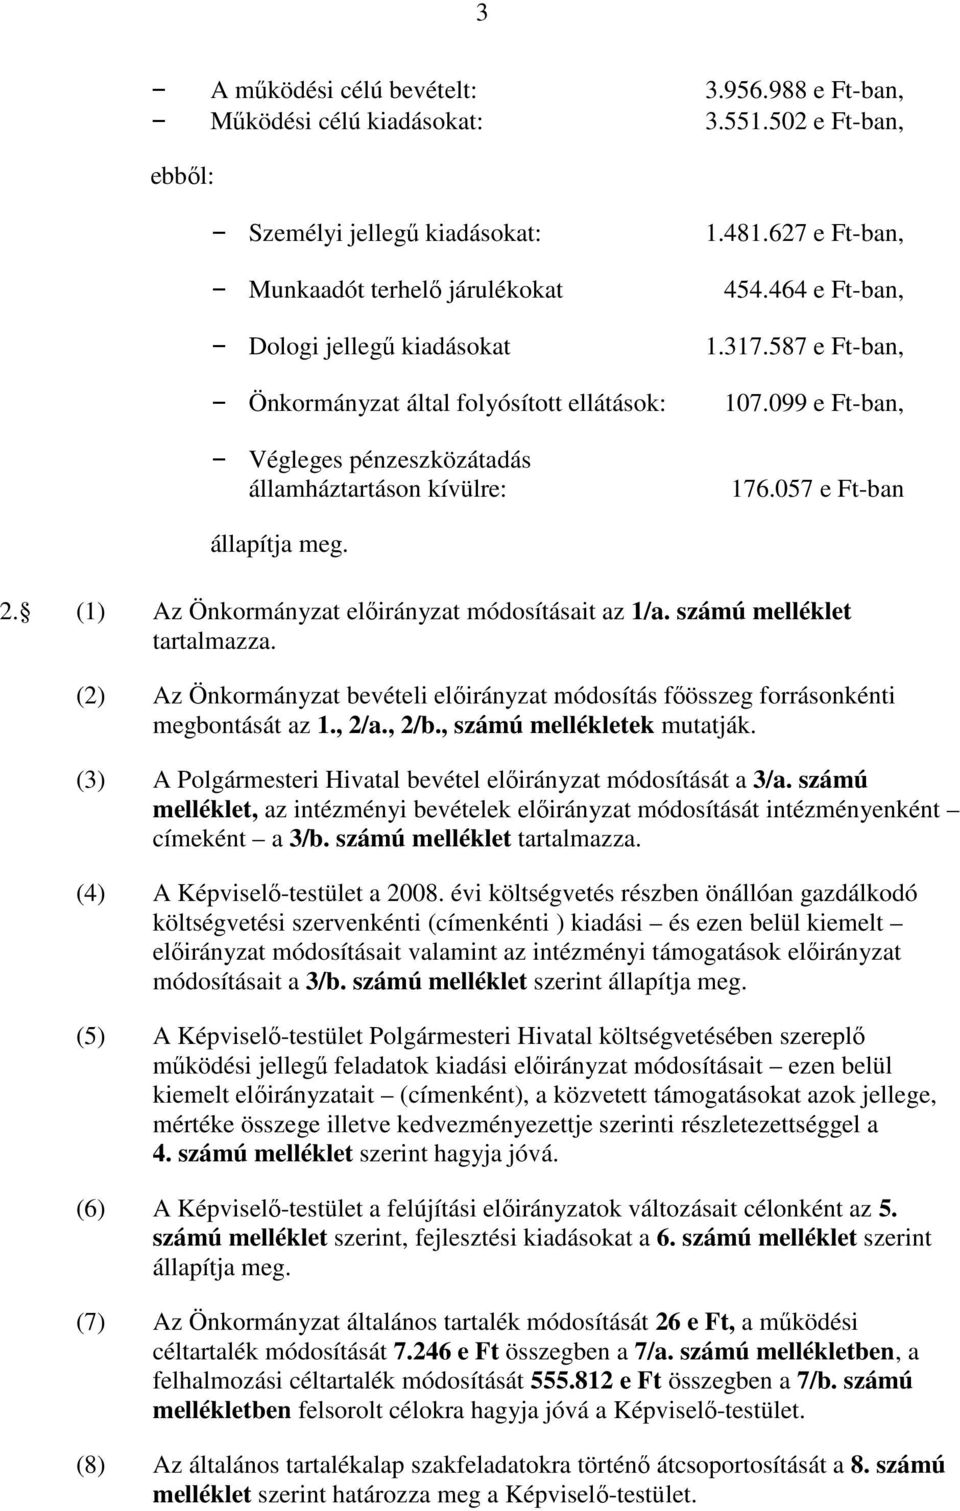 057 e Ft-ban állapítja meg. 2. (1) Az Önkormányzat elıirányzat módosításait az 1/a. számú melléklet tartalmazza.